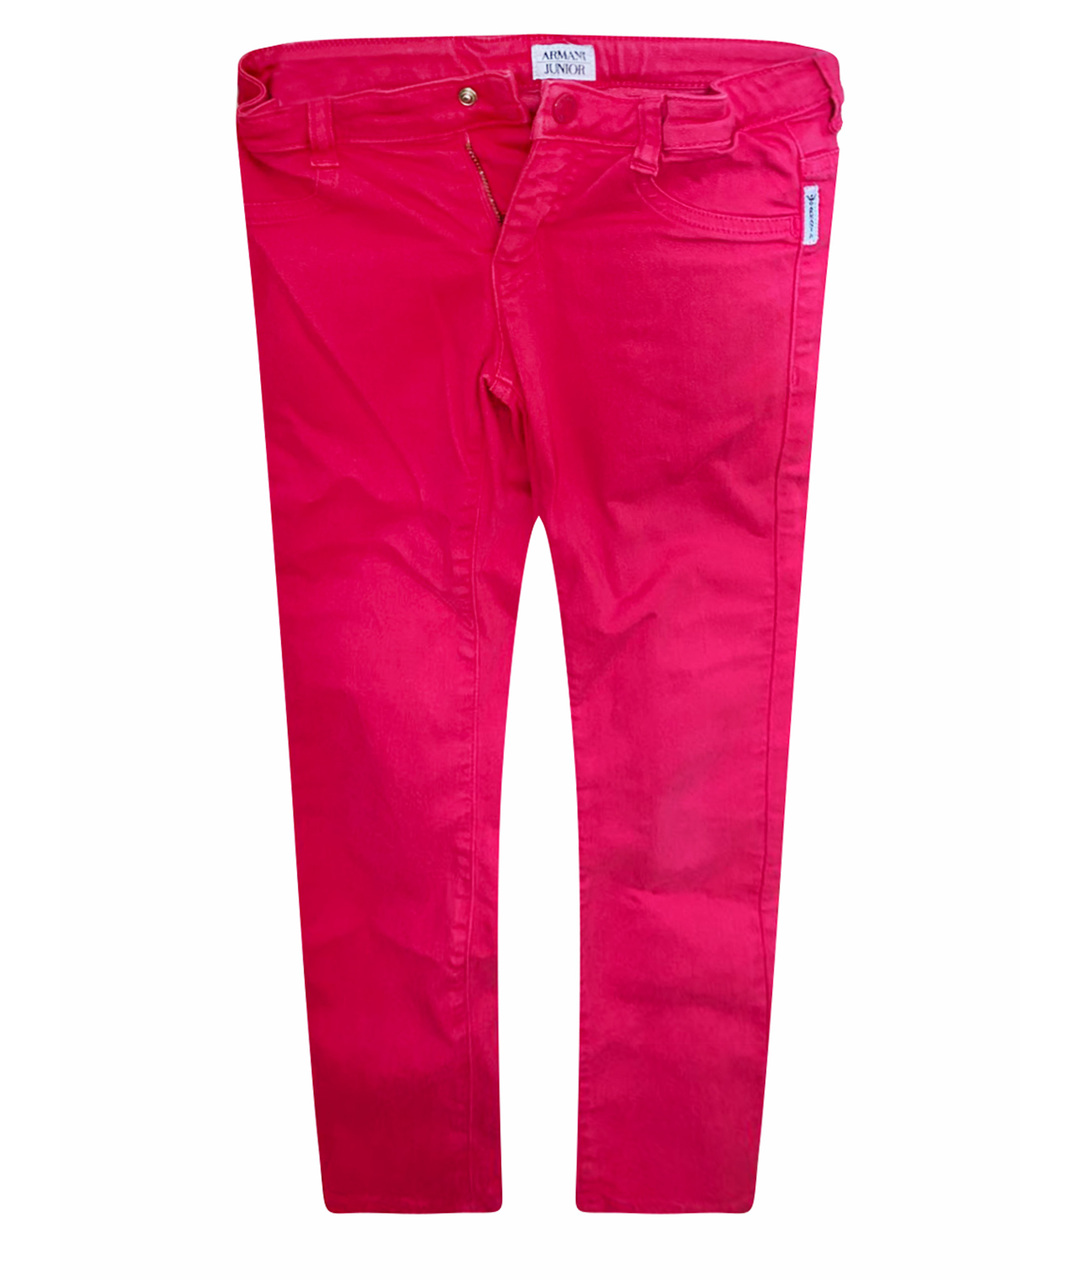 ARMANI JUNIOR Розовые деним детские джинсы, фото 1